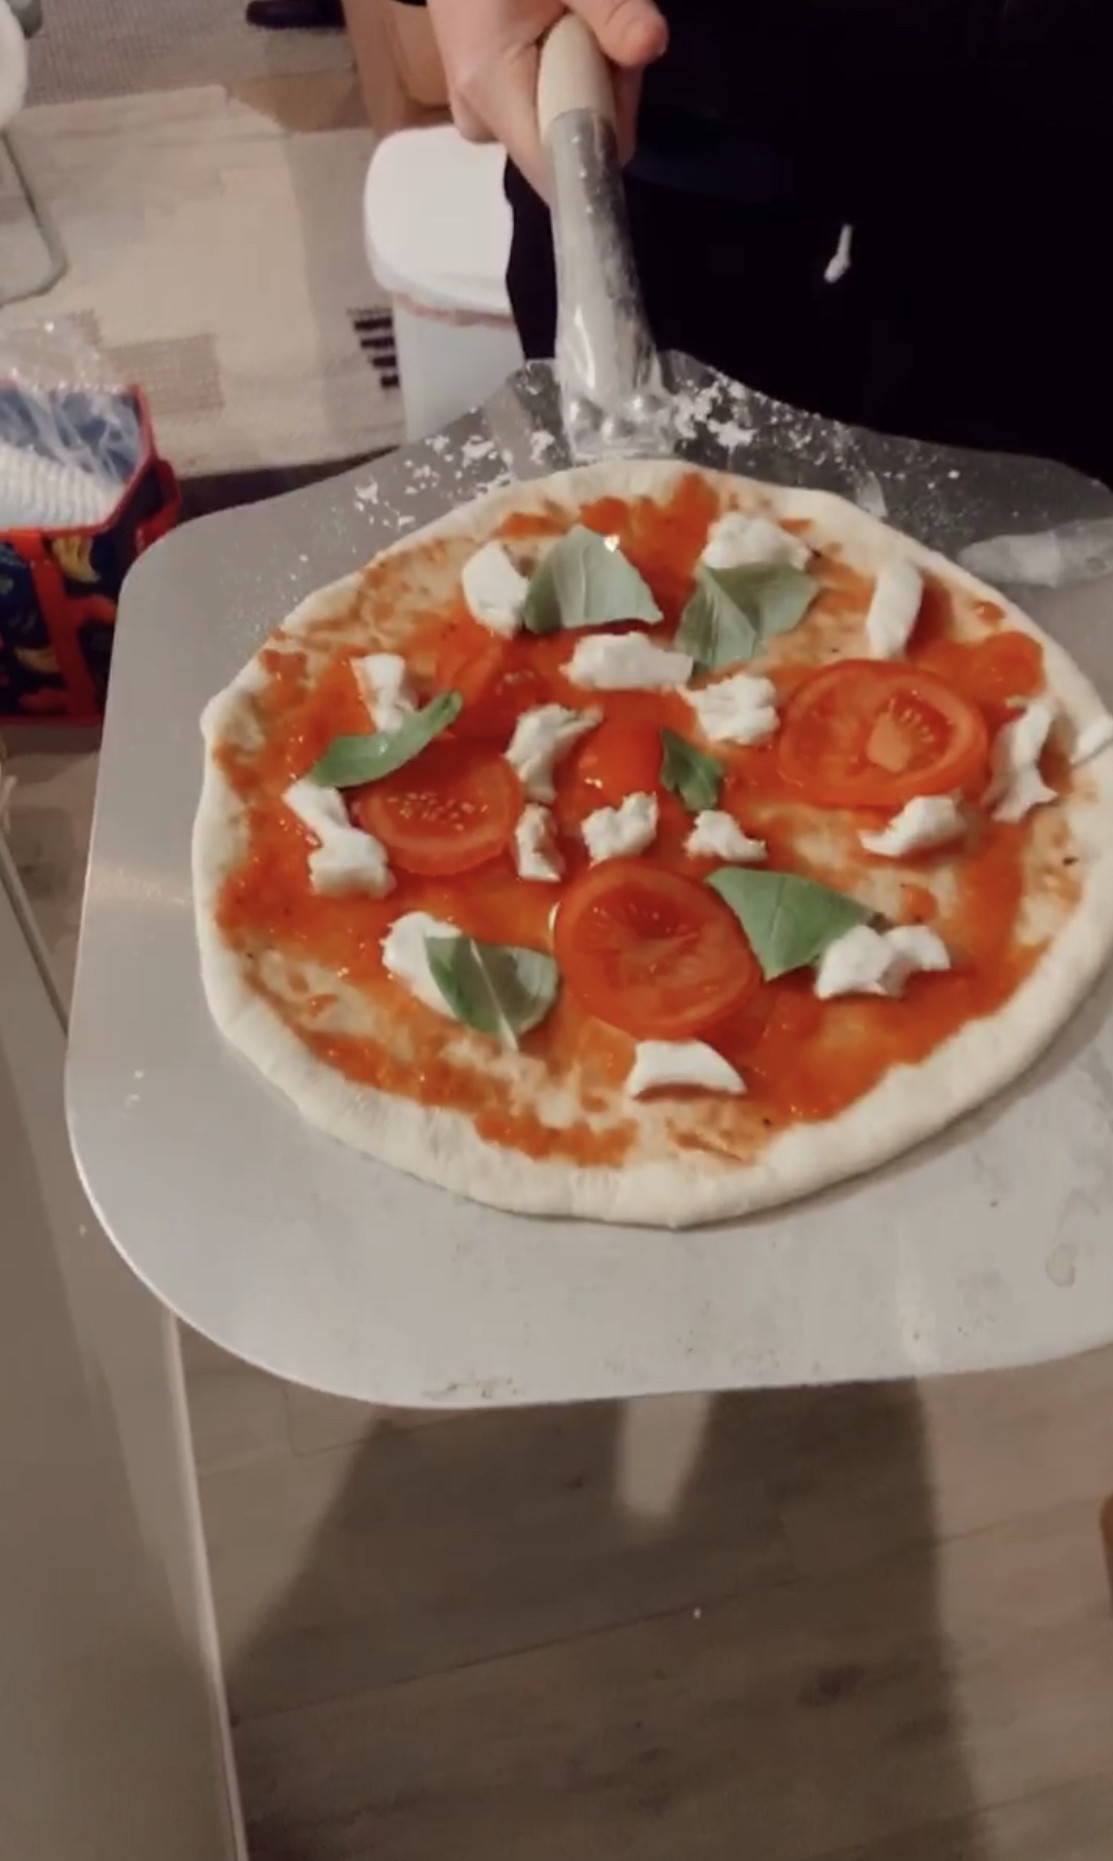 Authentic Italian Pizza Dough Recipe
 Authentic DIY Italian Pizza Dough Recipe—5 Ingre nts